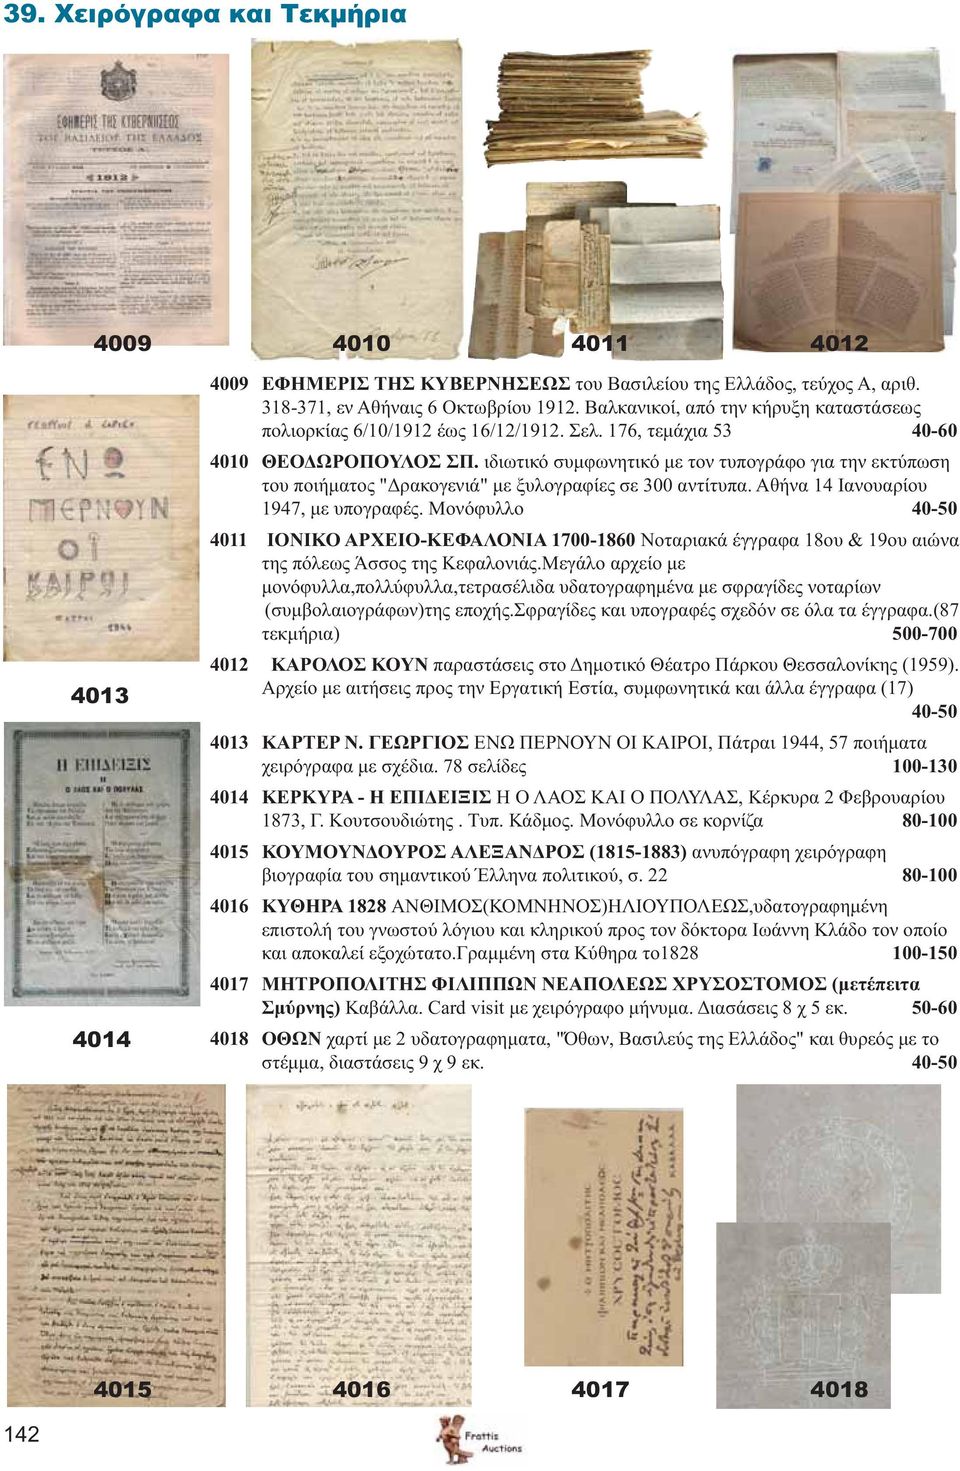 ιδιωτικό συμφωνητικό με τον τυπογράφο για την εκτύπωση του ποιήματος "Δρακογενιά" με ξυλογραφίες σε 300 αντίτυπα. Αθήνα 14 Ιανουαρίου 1947, με υπογραφές.